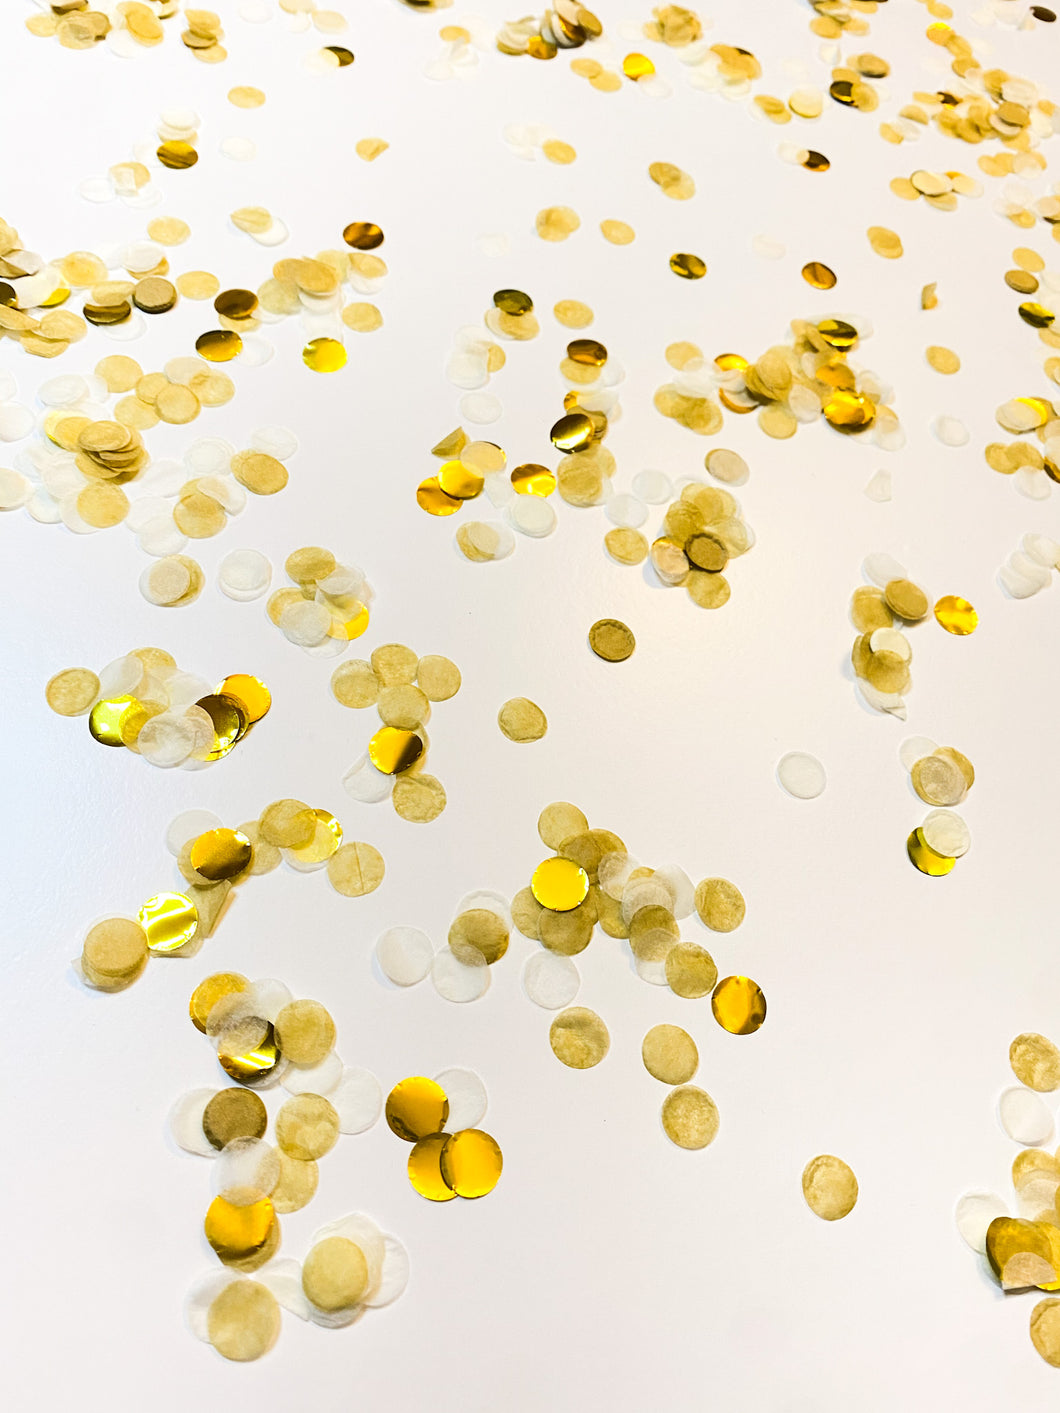 Confetti Mix - Gold & White